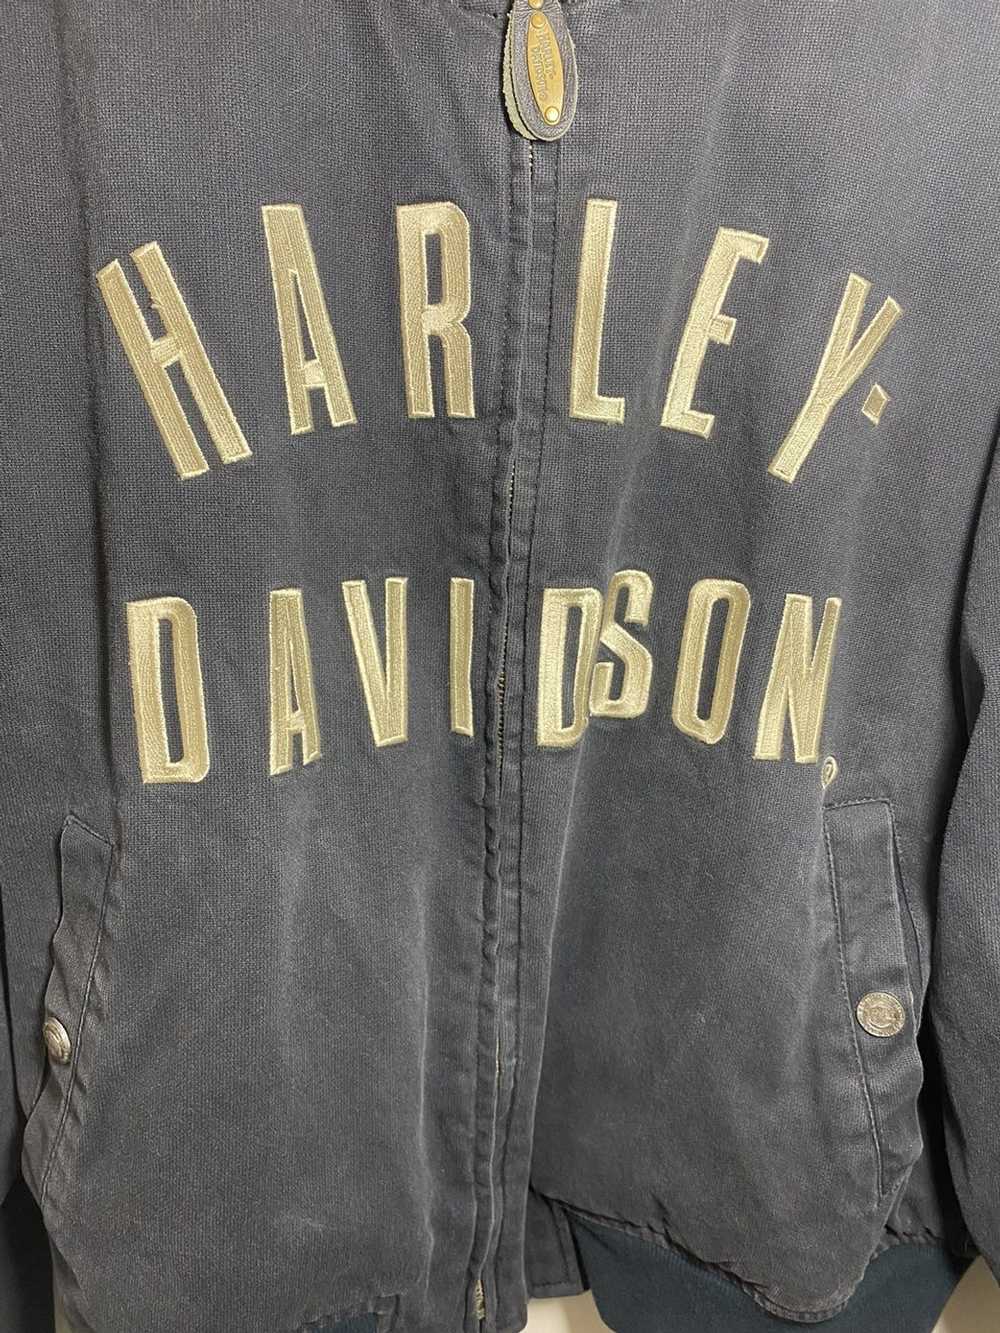 Harley Davidson Vintage Harley Davidson Jacket - image 2